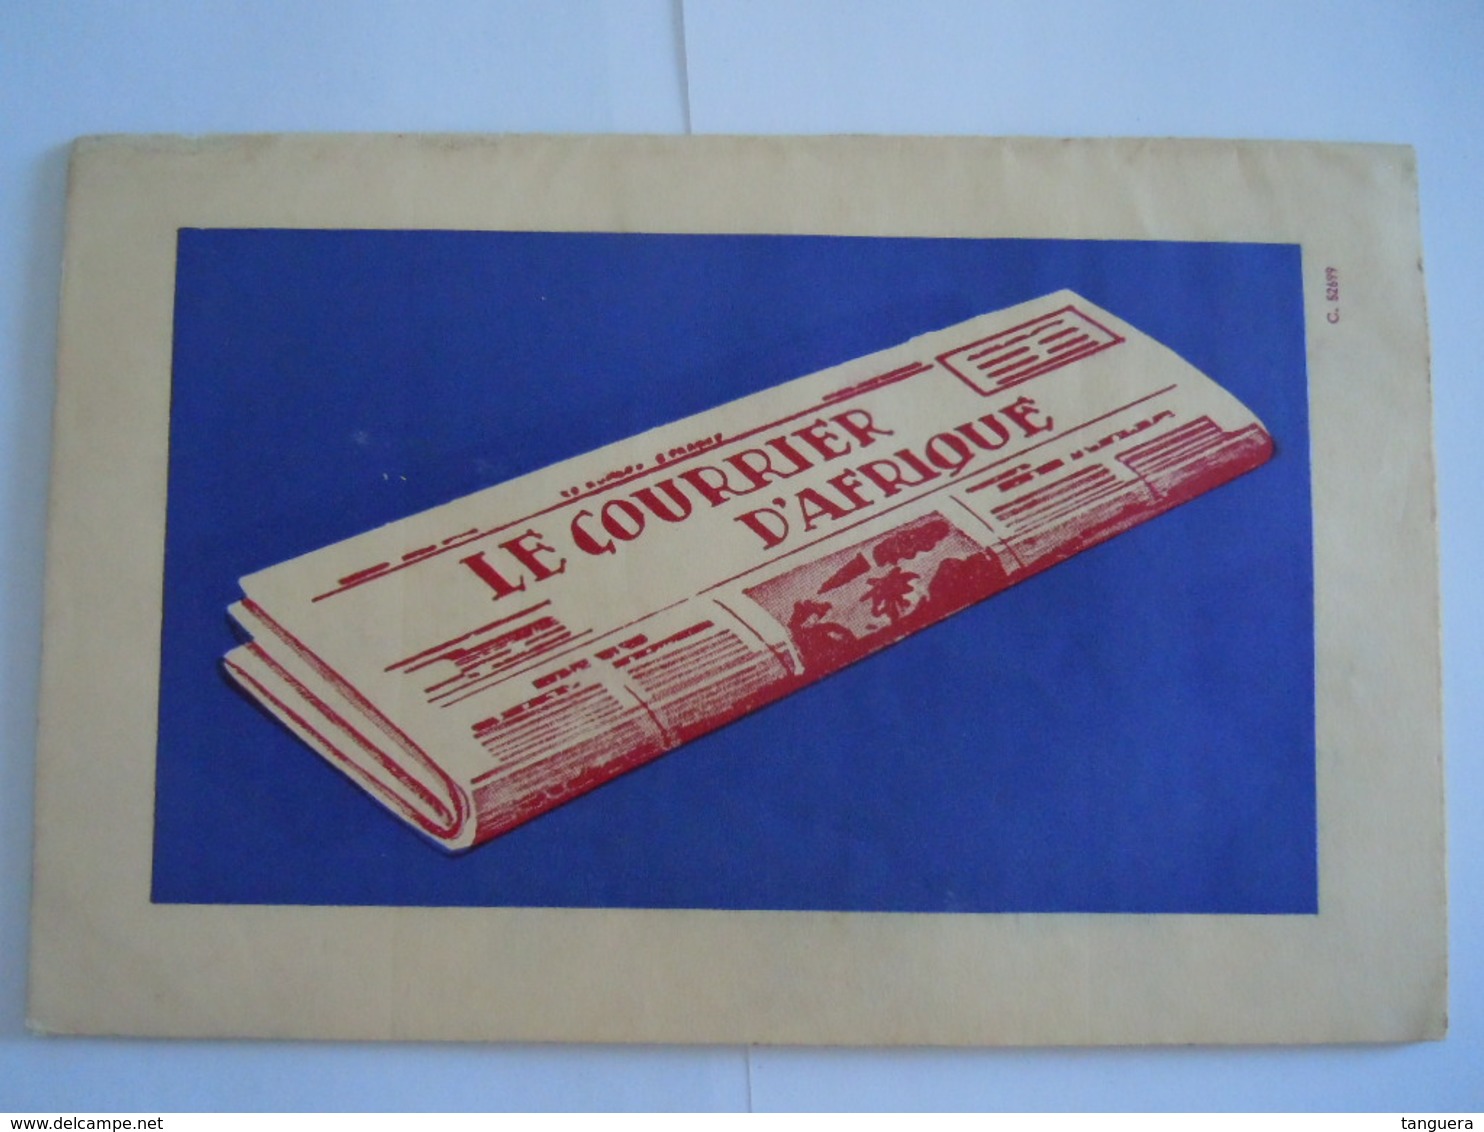 ECHO SCOUT N° 9 1954 Organe officiel de la F.E.C.C.B. scoutisme en Congo Belge 28 pages